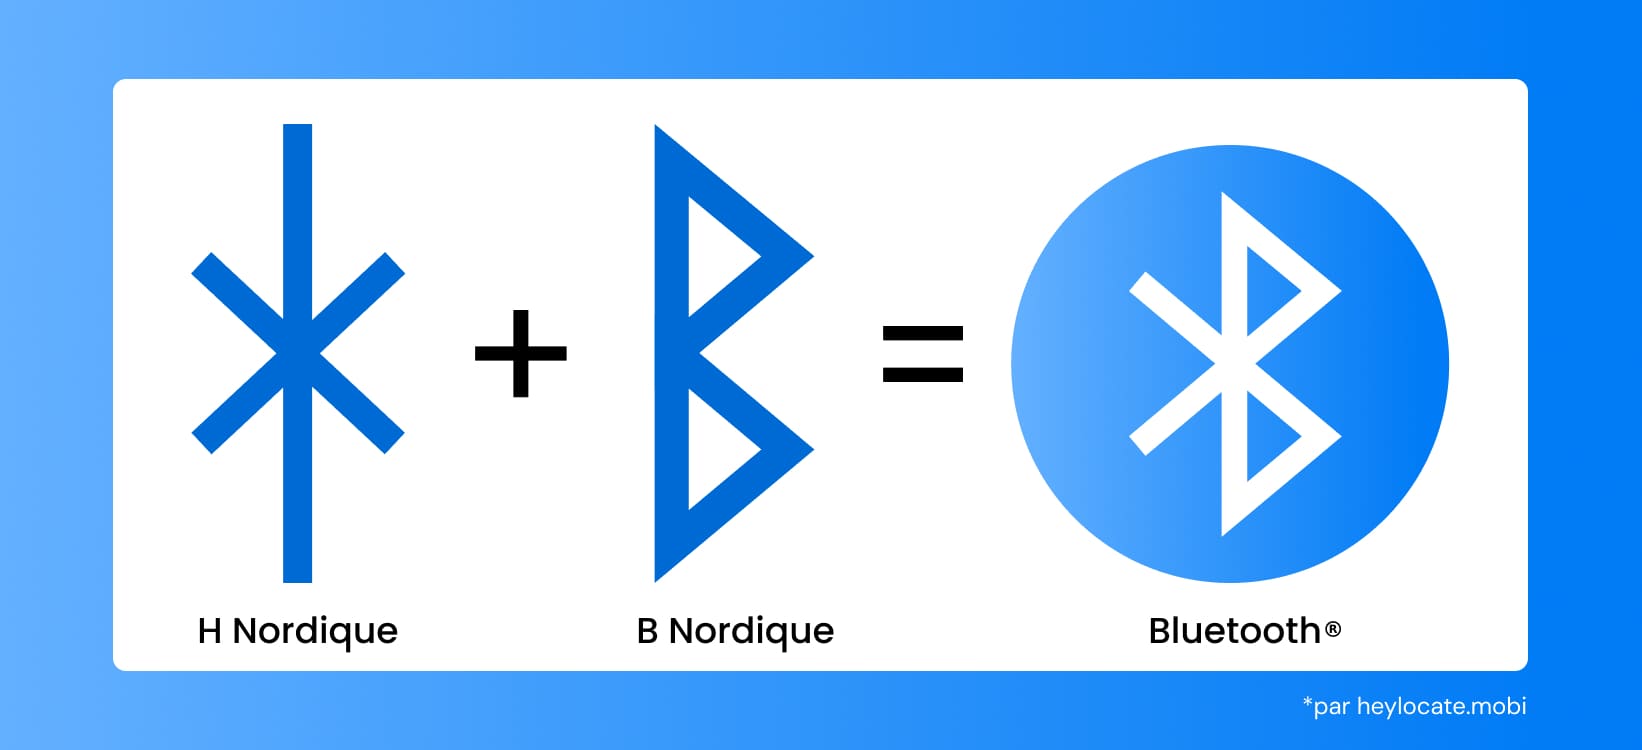 Image illustrant l'origine du symbole Bluetooth, qui combine les runes scandinaves "H" et "B"